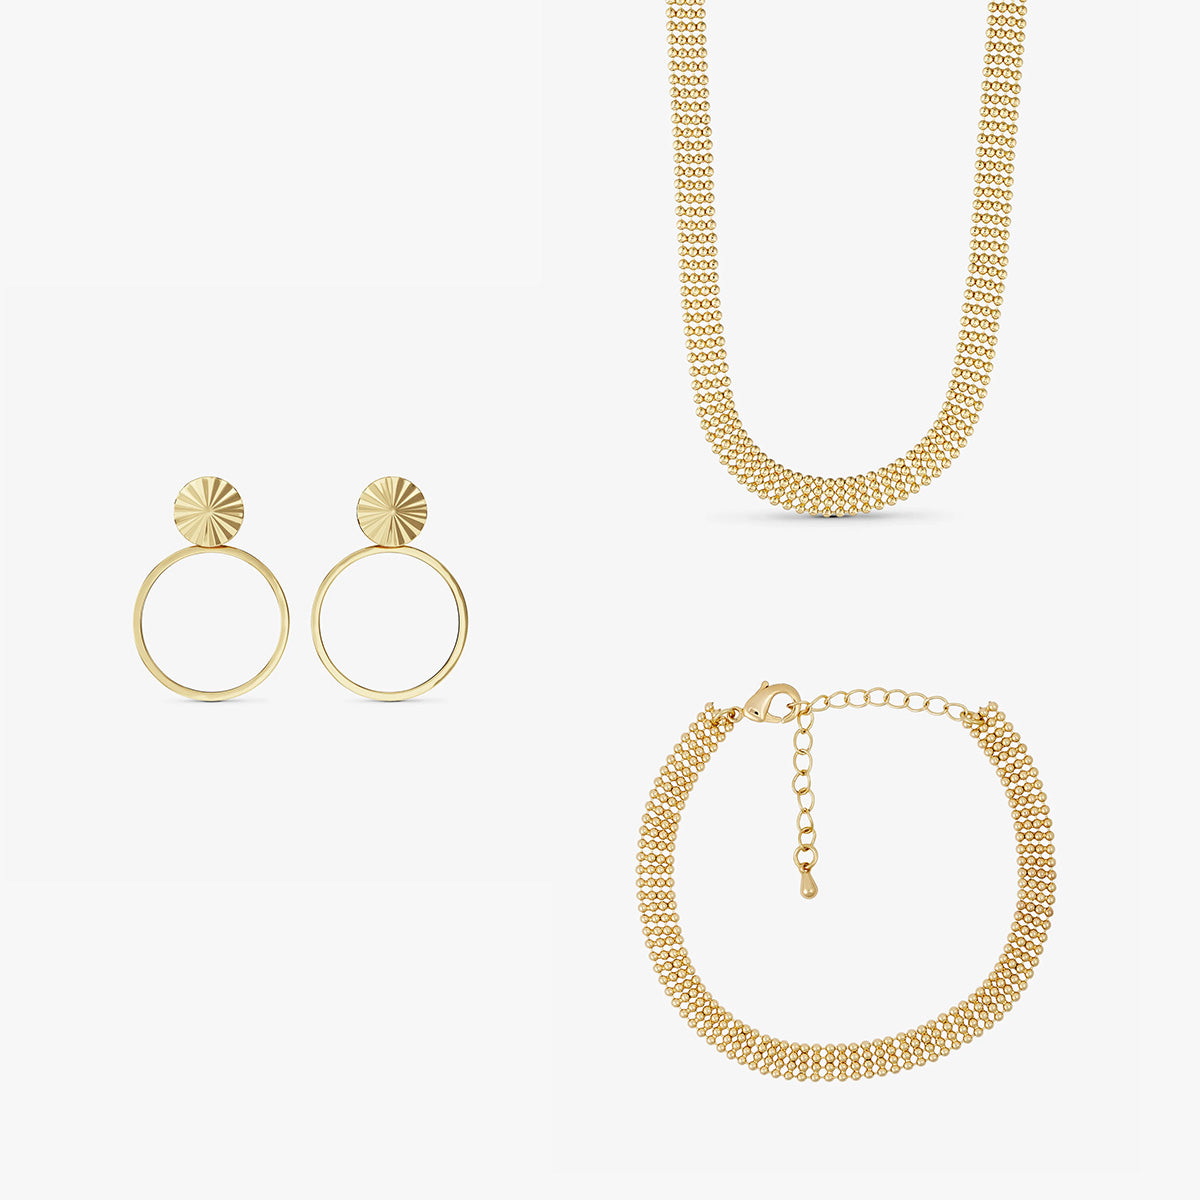 Jewelery set - Eden Necklace / Eden Bracelet / Scarlett Earrings - 18 carat gold plated